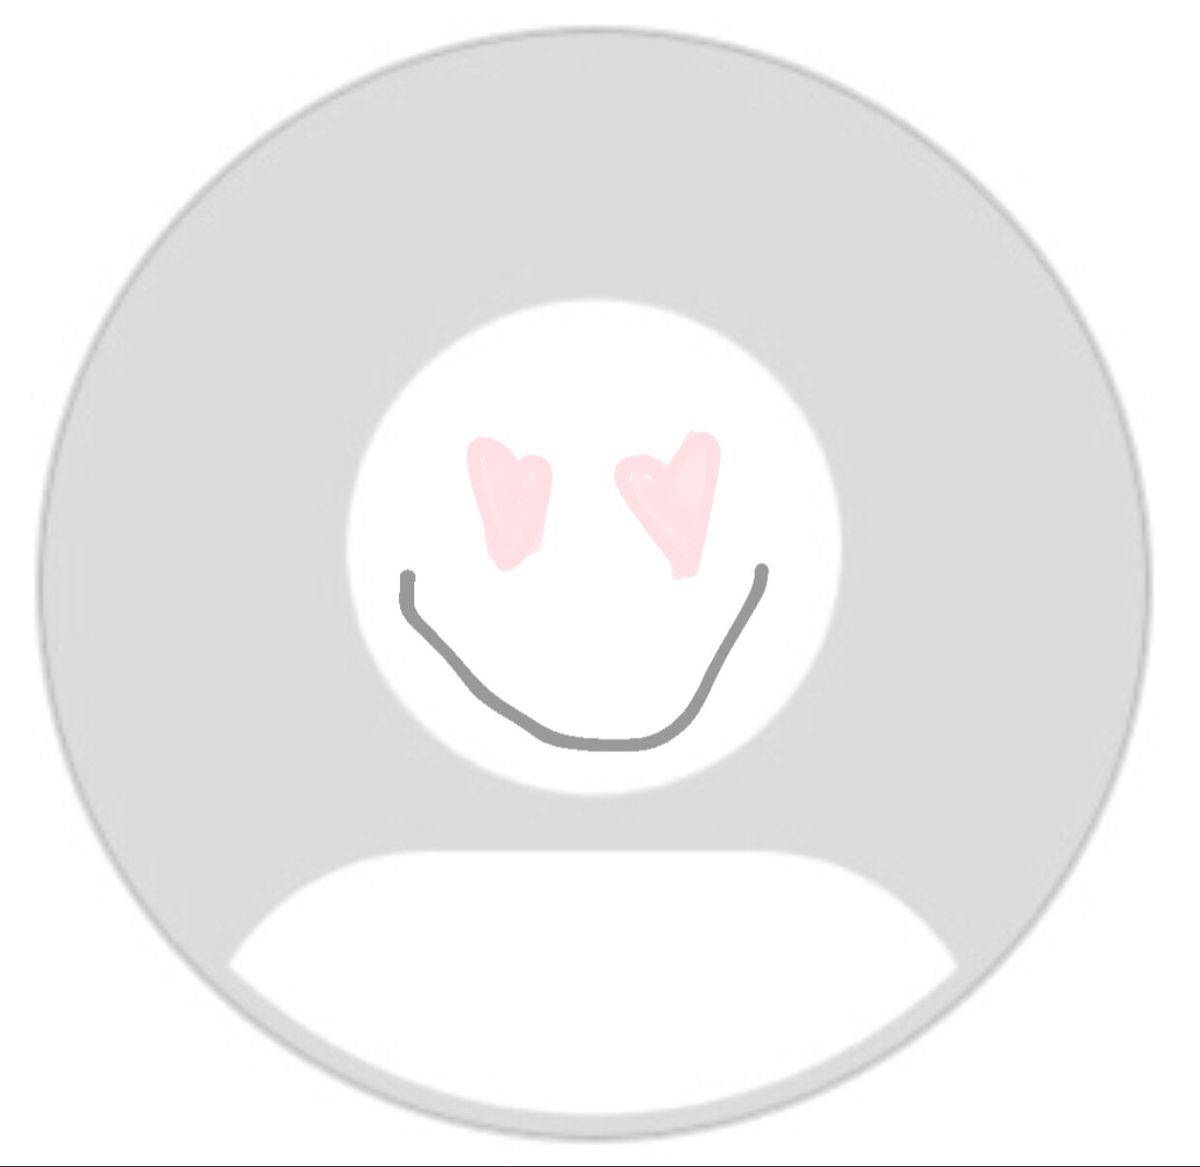 Caption: Vibrant Smiley - Your Default Profile Picture Wallpaper